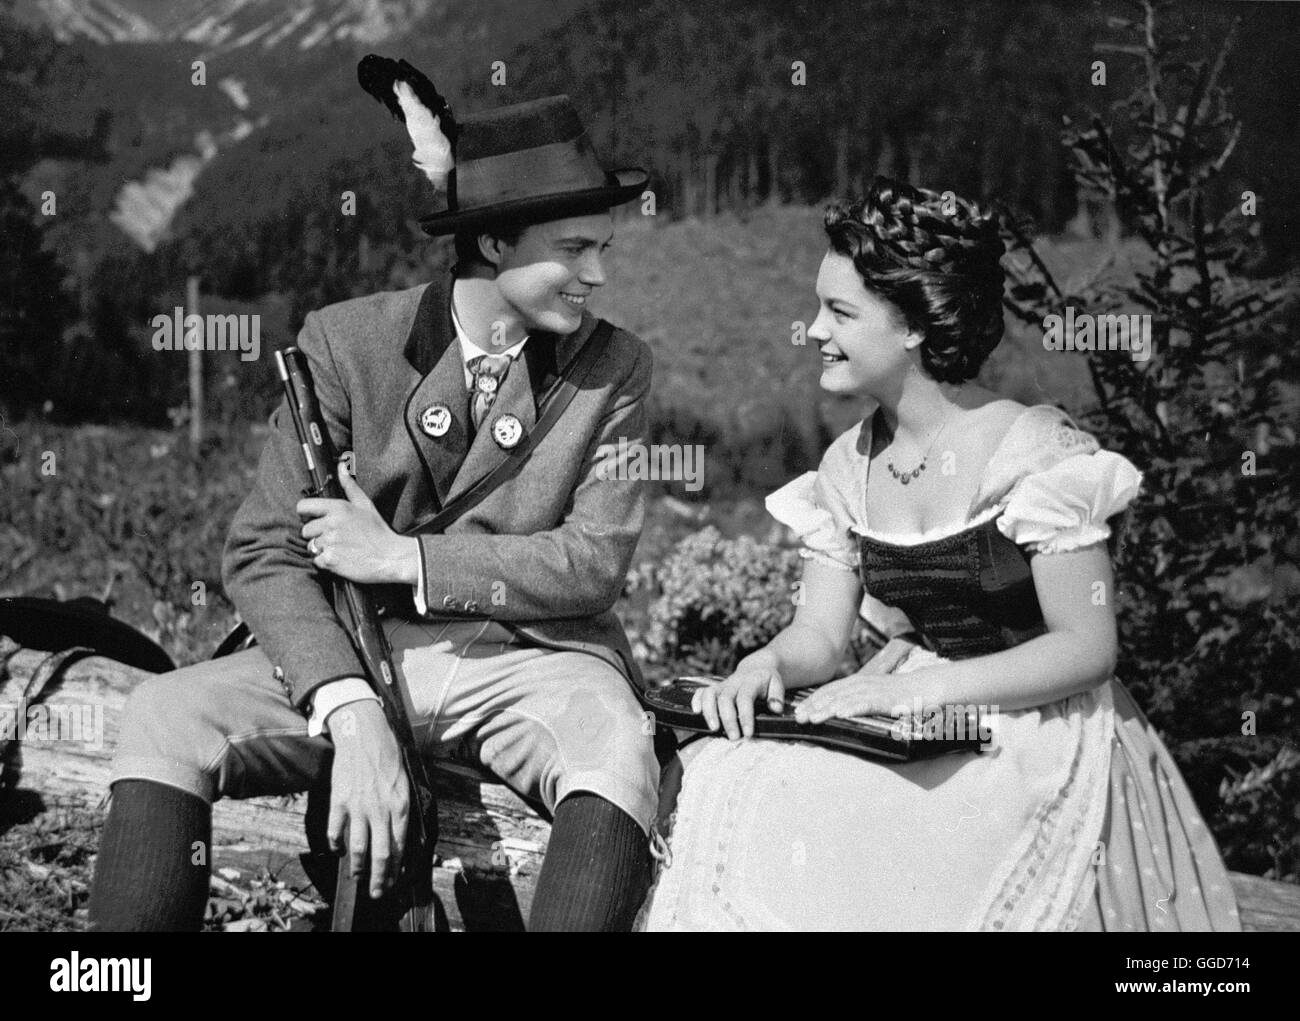 SISSI / Autriche 1955 / Ernst Marischka Die junge Sissi (Romy Schneider) und Kaiser Franz Joseph (Karlheinz Böhm). Regie : Ernst Marischka Banque D'Images